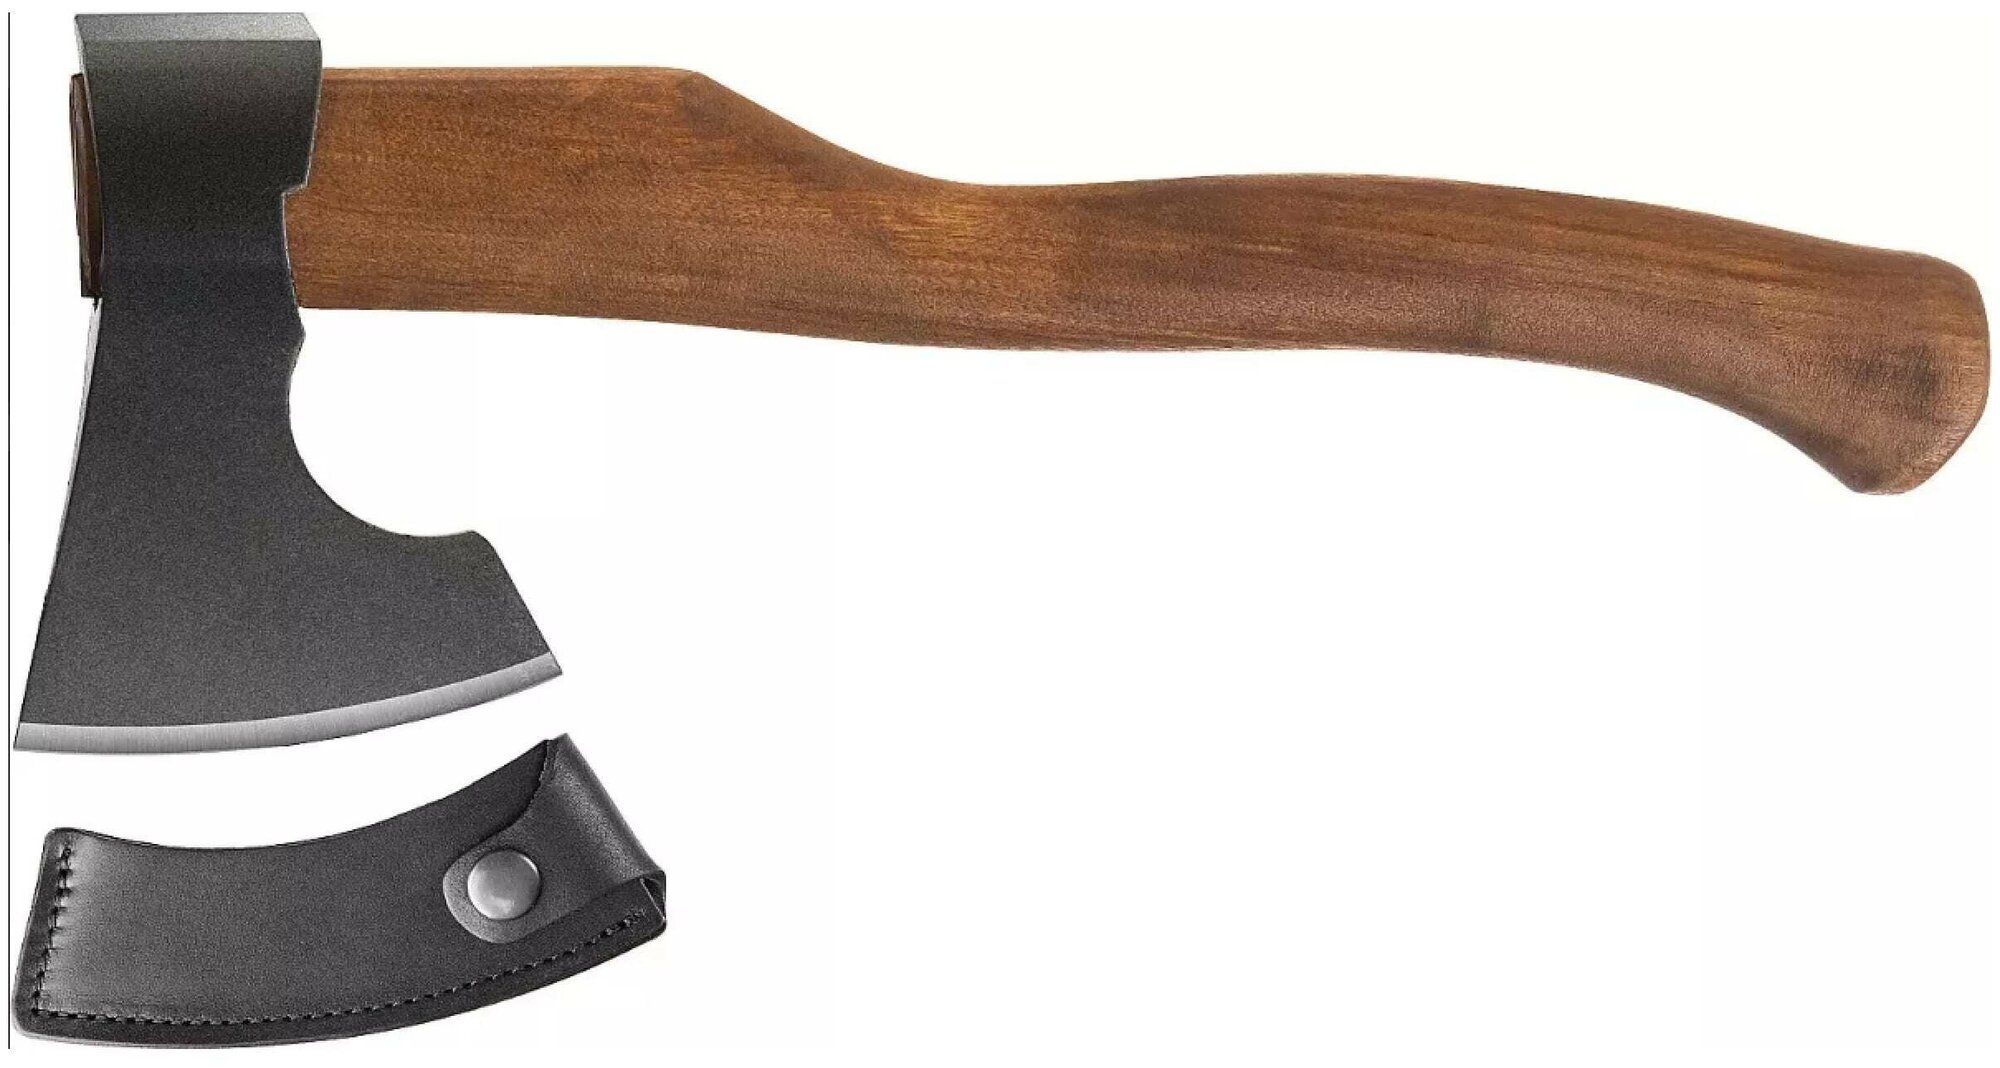 Ижсталь-ТНП Викинг-Премиум 600 г топор кованый деревянная рукоятка